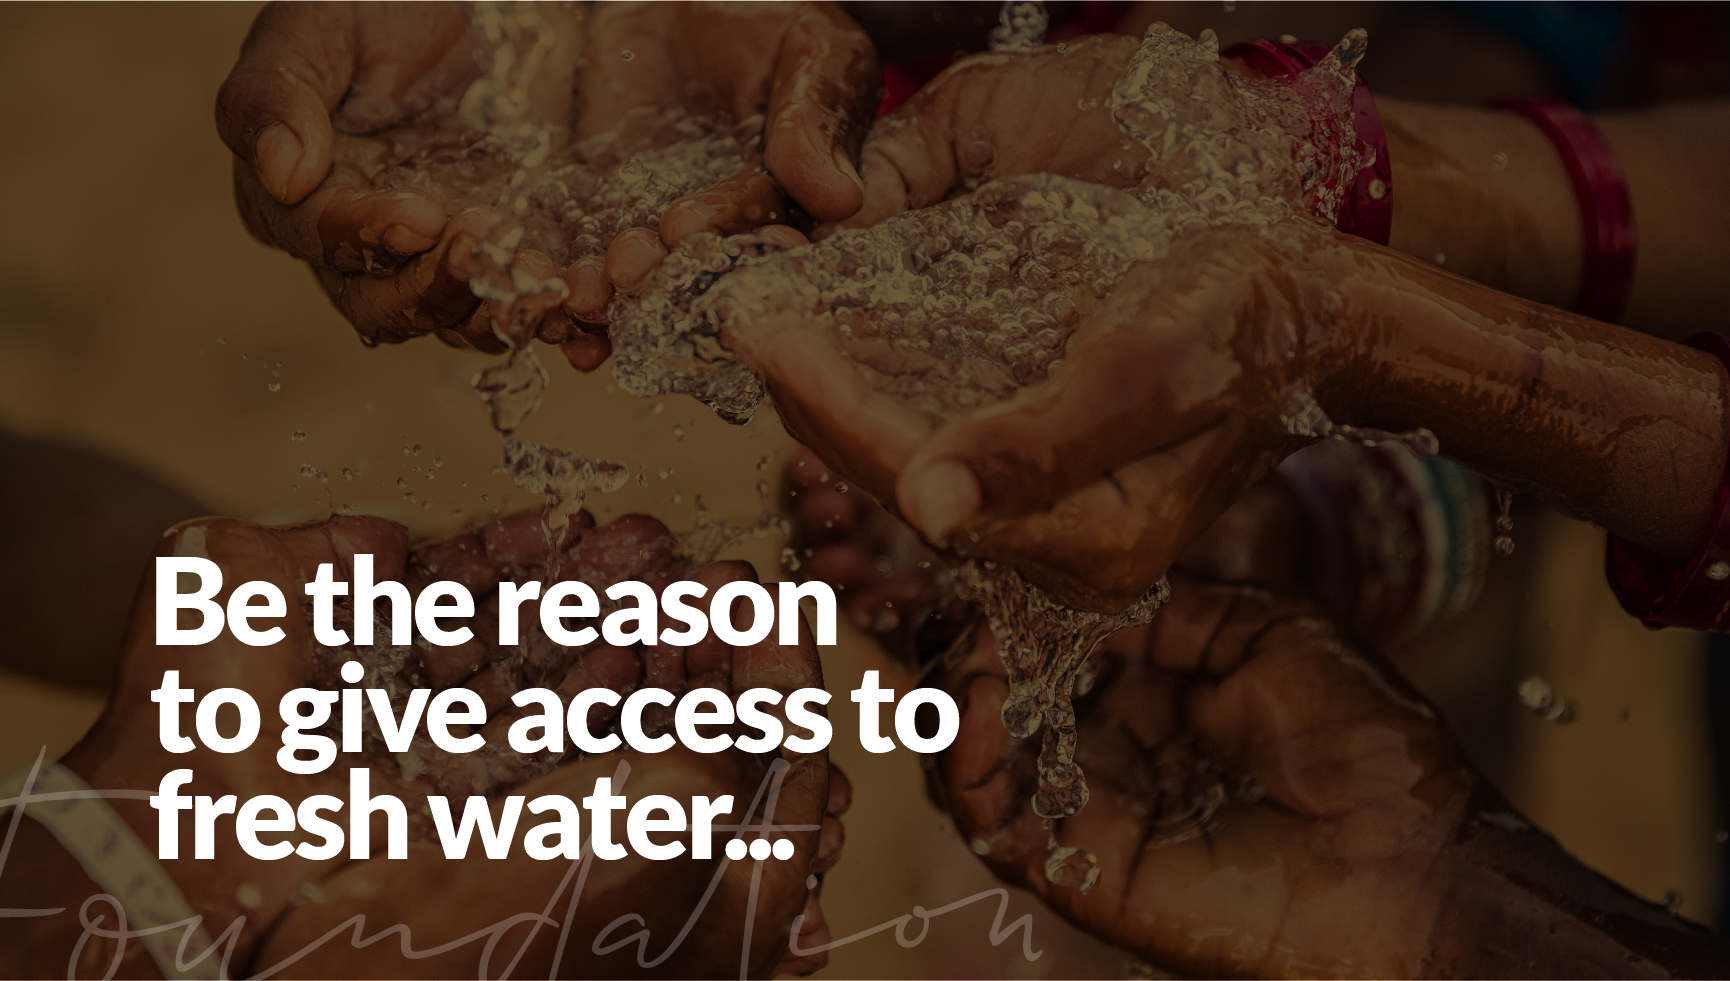 Pakistan water appeal